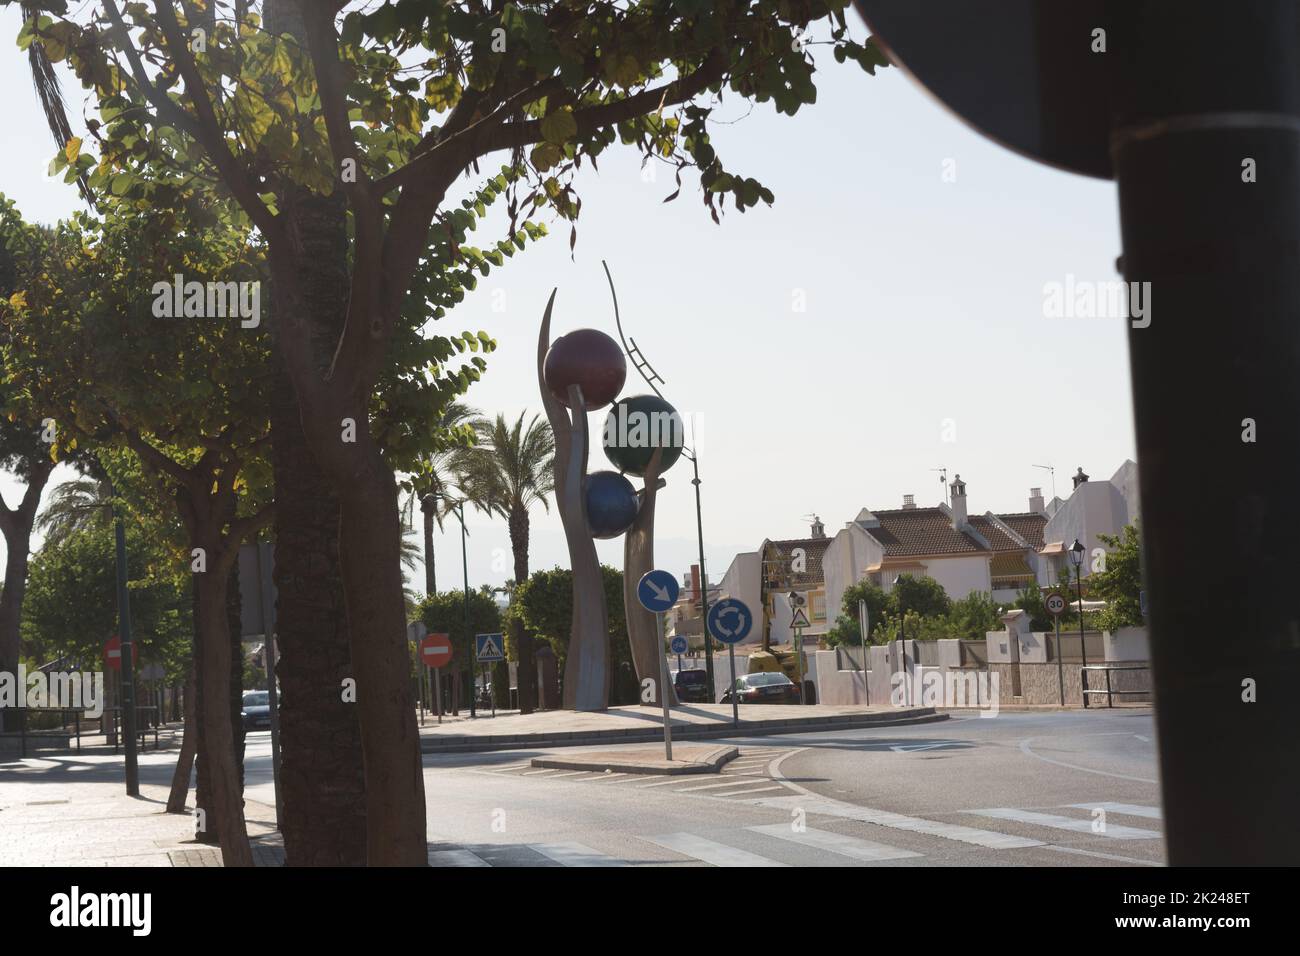 MALAGA, COSTA DEL SOL, SPAIN - AUGUST 28, 2019: Roundabout in Alhaurín de la Torre on AV Malaga Stock Photo